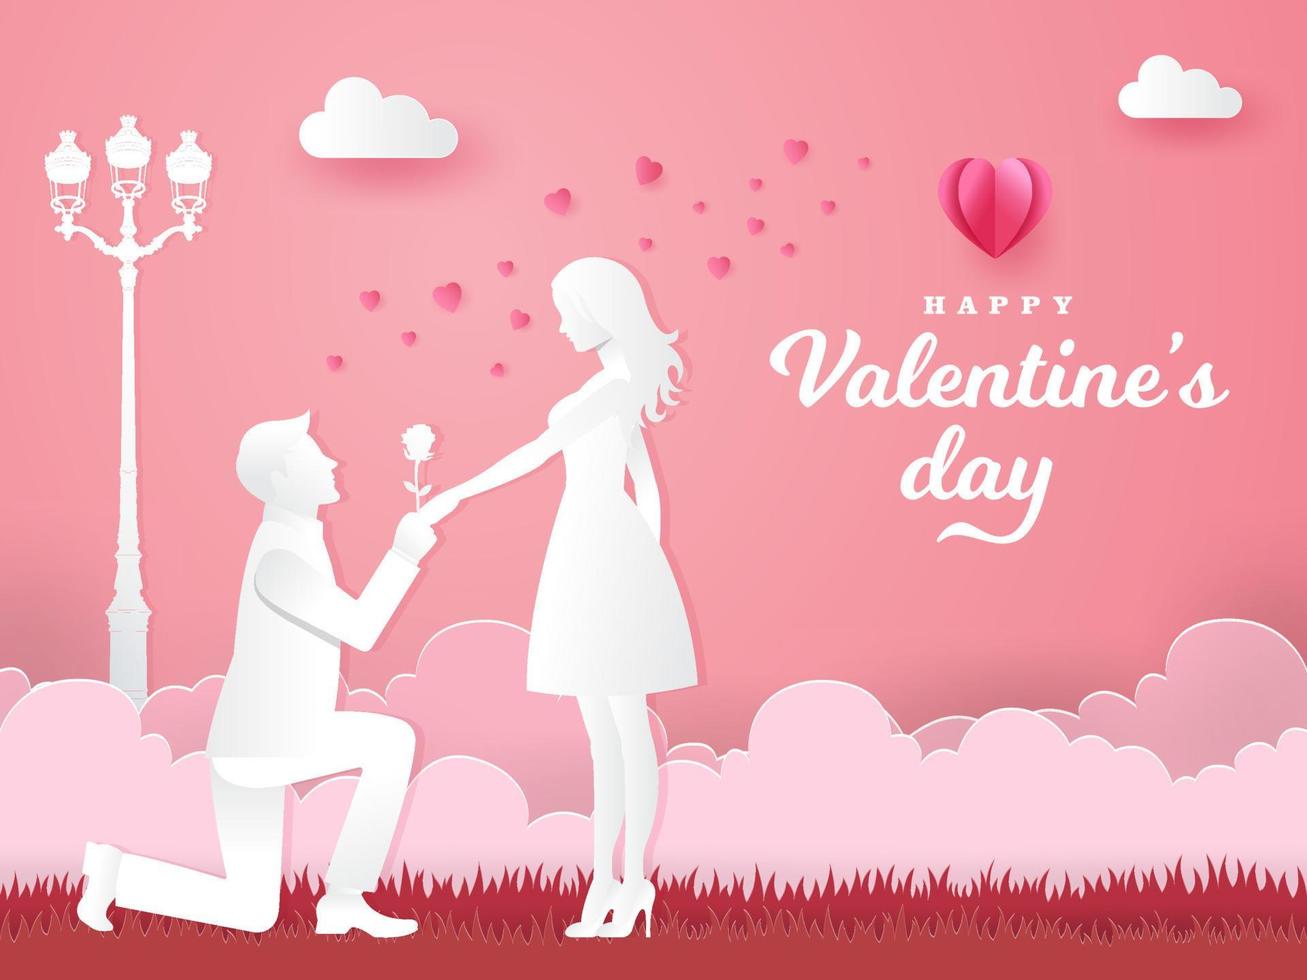 tarjeta de felicitación del día de san valentín. joven arrodillado a su novia y dando una rosa en el parque vector